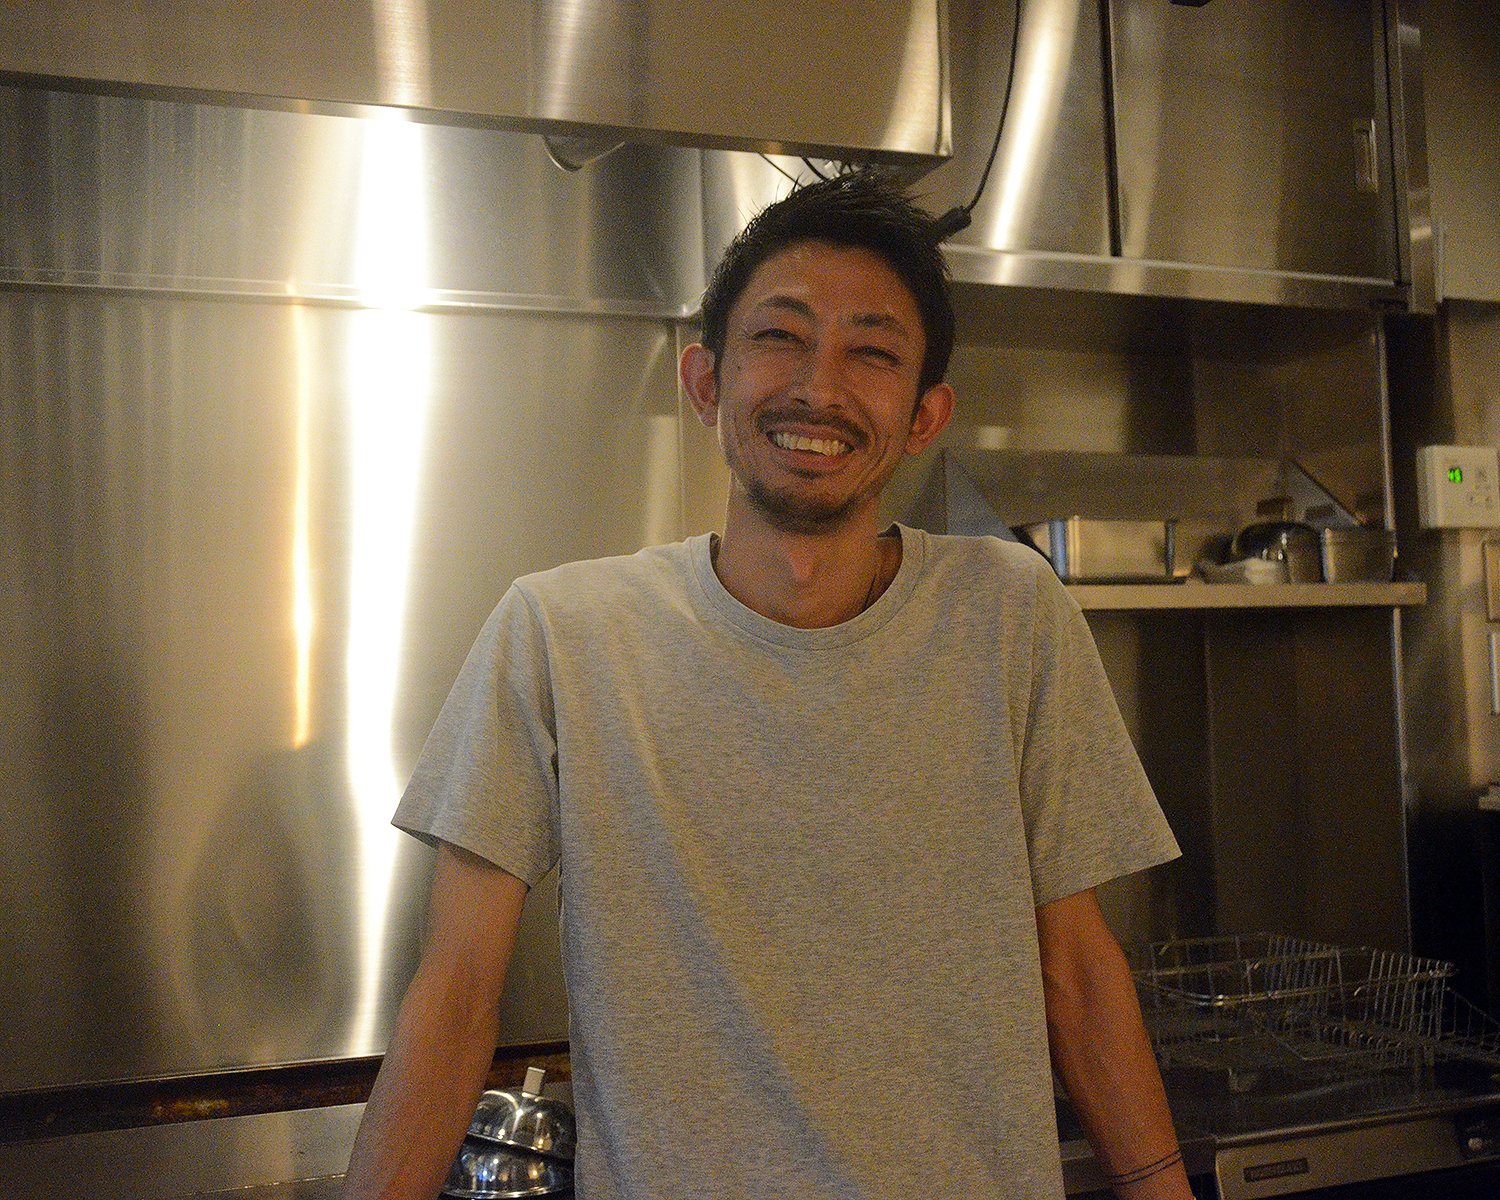 お話を伺ったのはこのお店のオーナーでもある曽根大五郎さん。ハンバーガー作りには自信のある好みのものを入れてアレンジすることも。